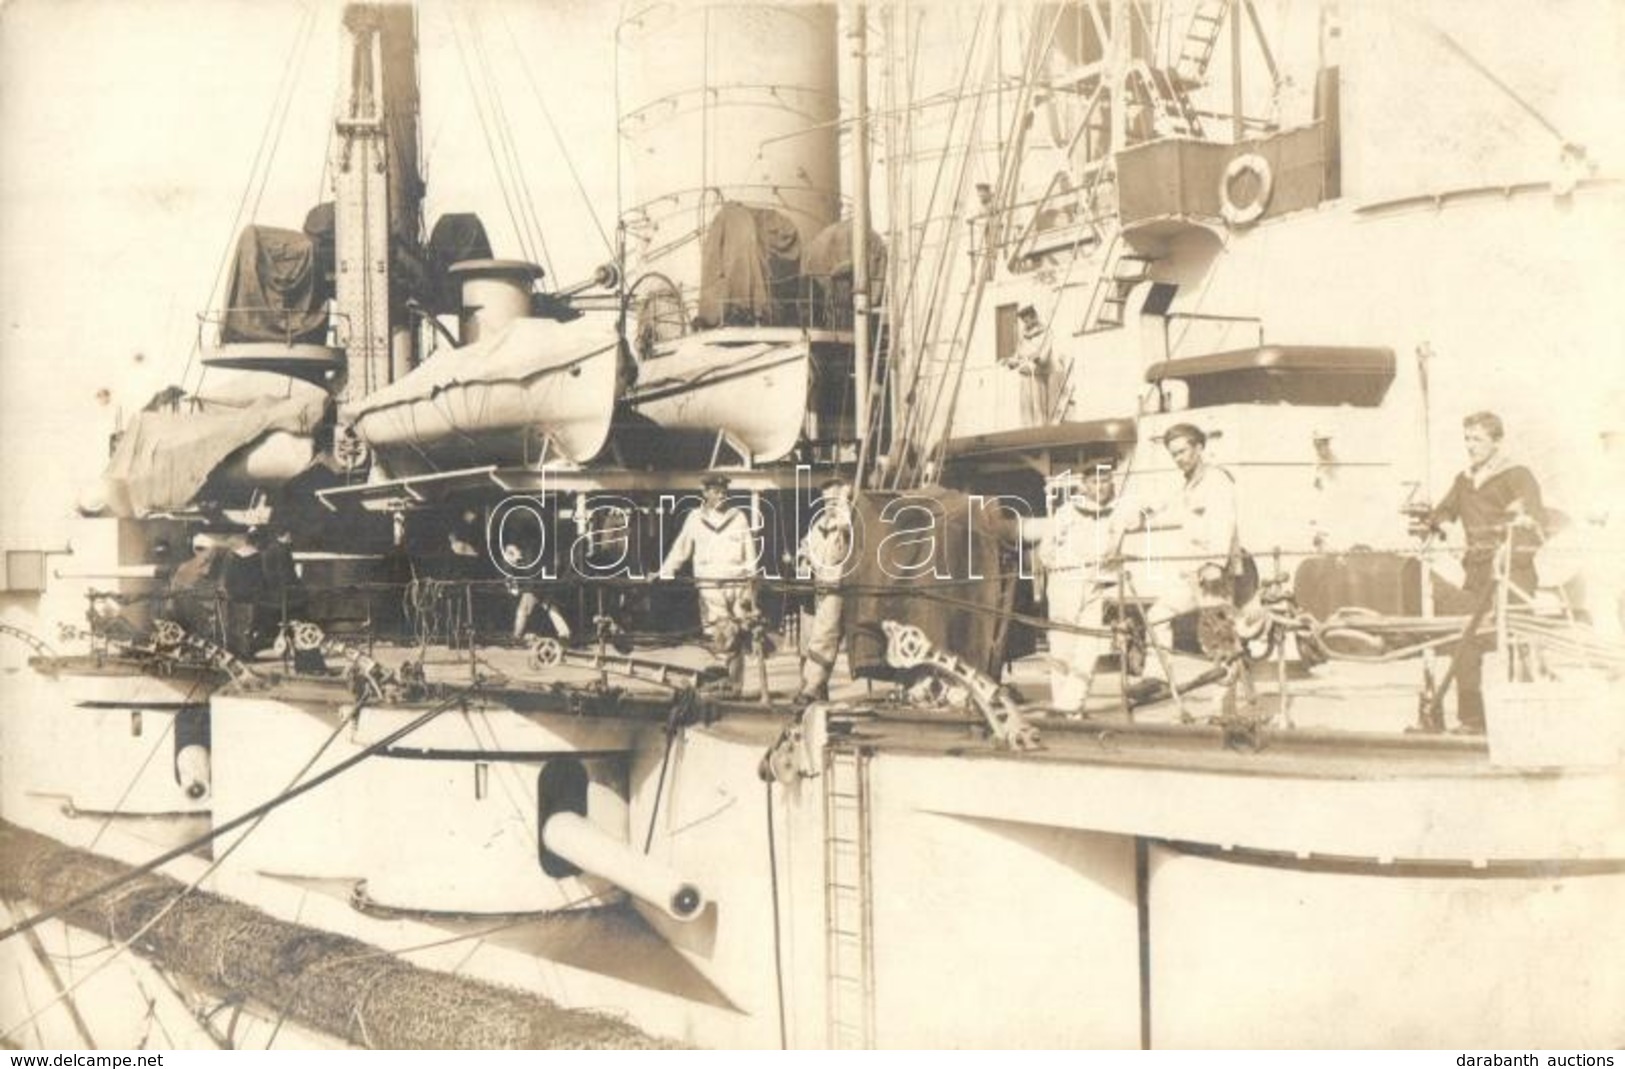 ** T2 SMS Radetzky Osztrák-magyar Radetzky-osztályú Pre-dreadnought Csatahajó Fedélzete Matrózokkal / WWI Austro-Hungari - Unclassified